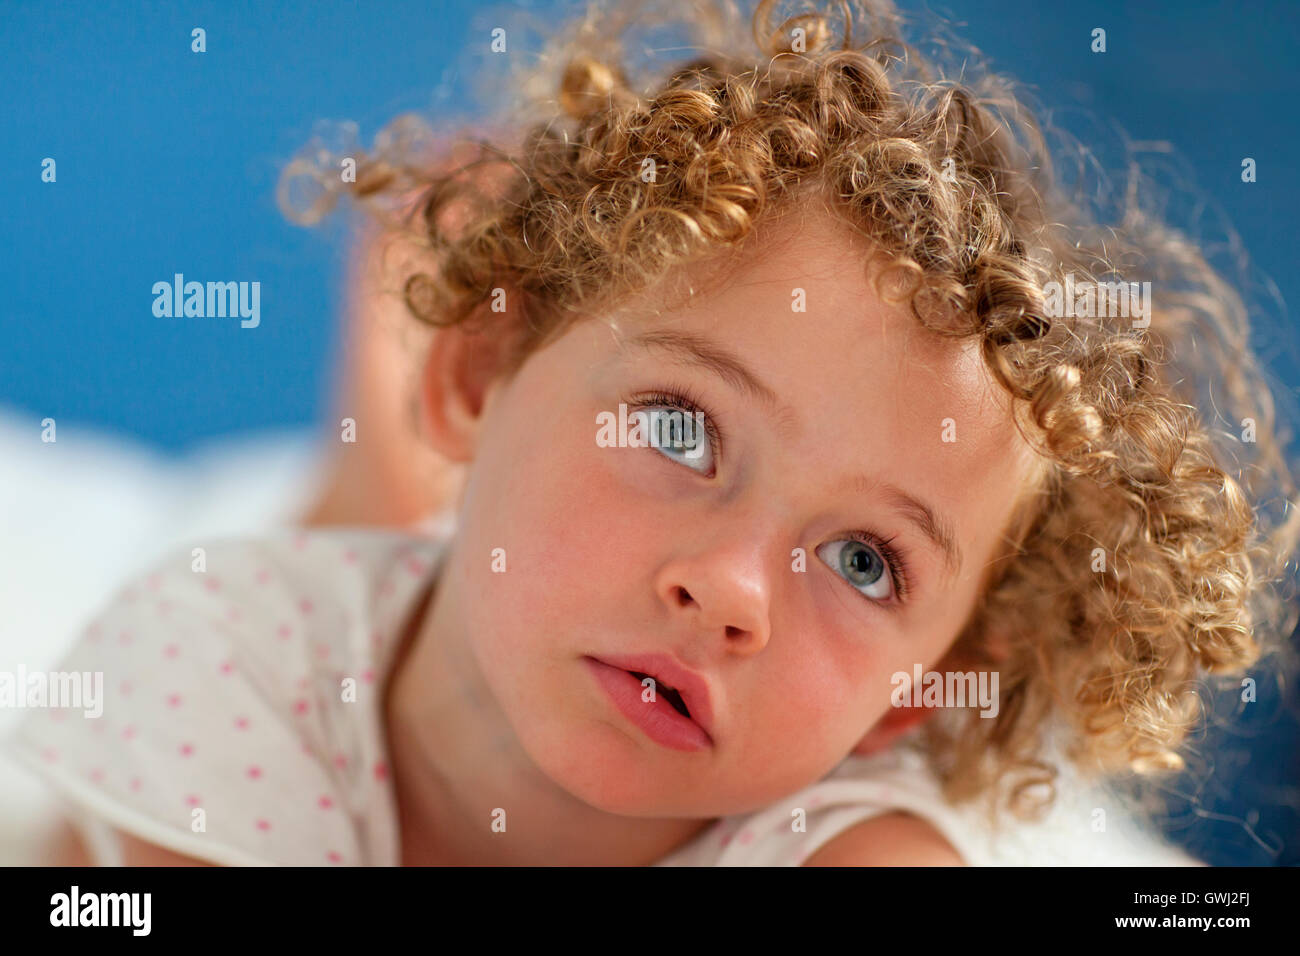 Belle jeune fille aux cheveux bouclés Photo Stock - Alamy